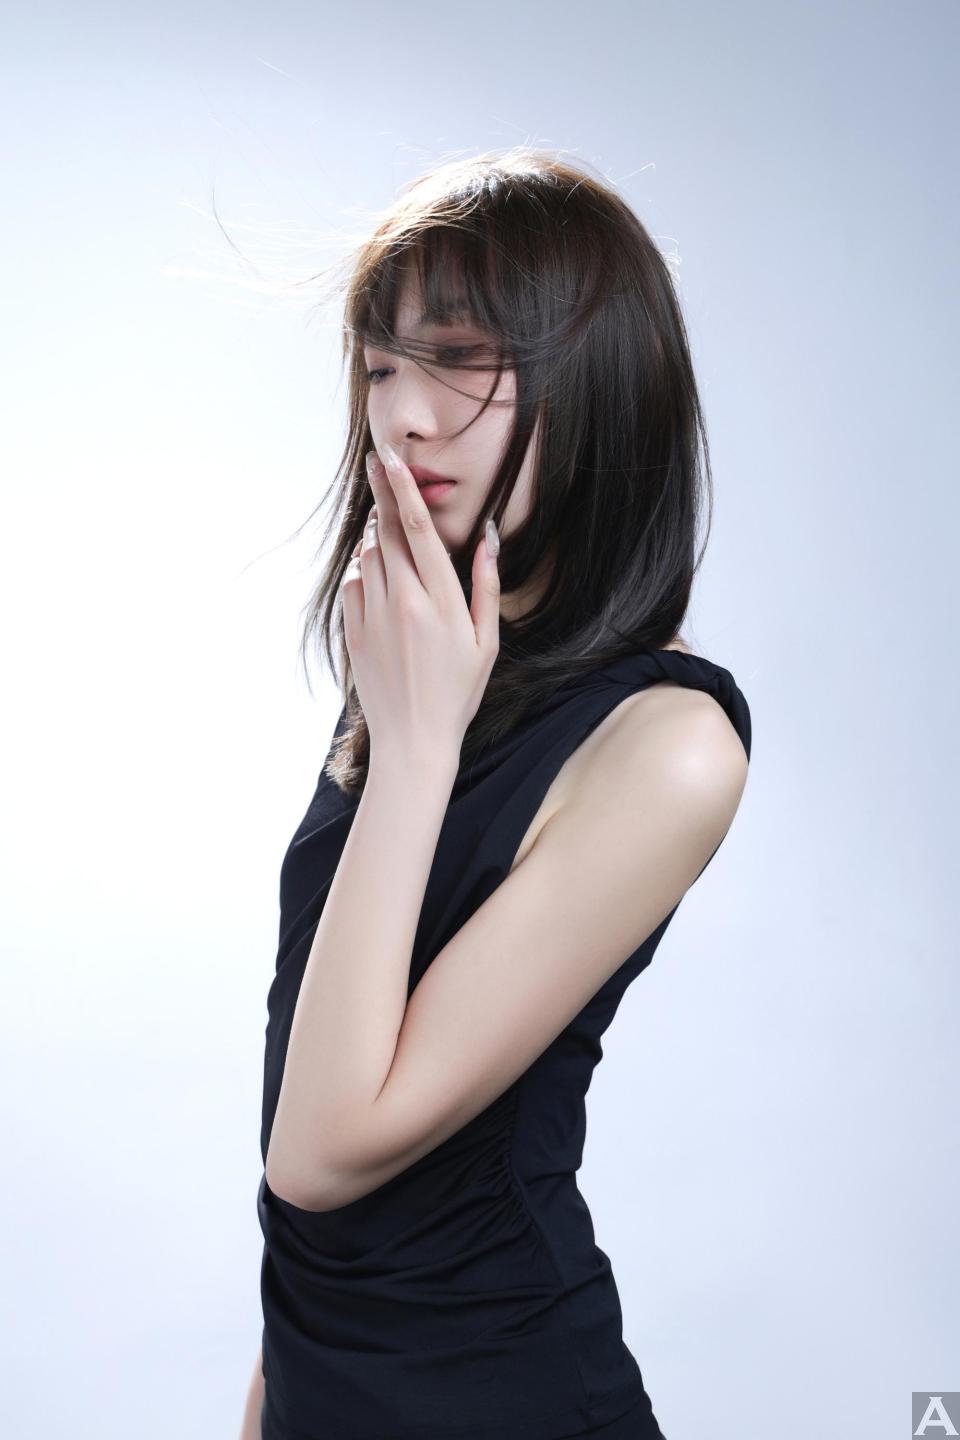 東京外国人モデル事務所アクアモデル所属のアジア人モデルのマックス